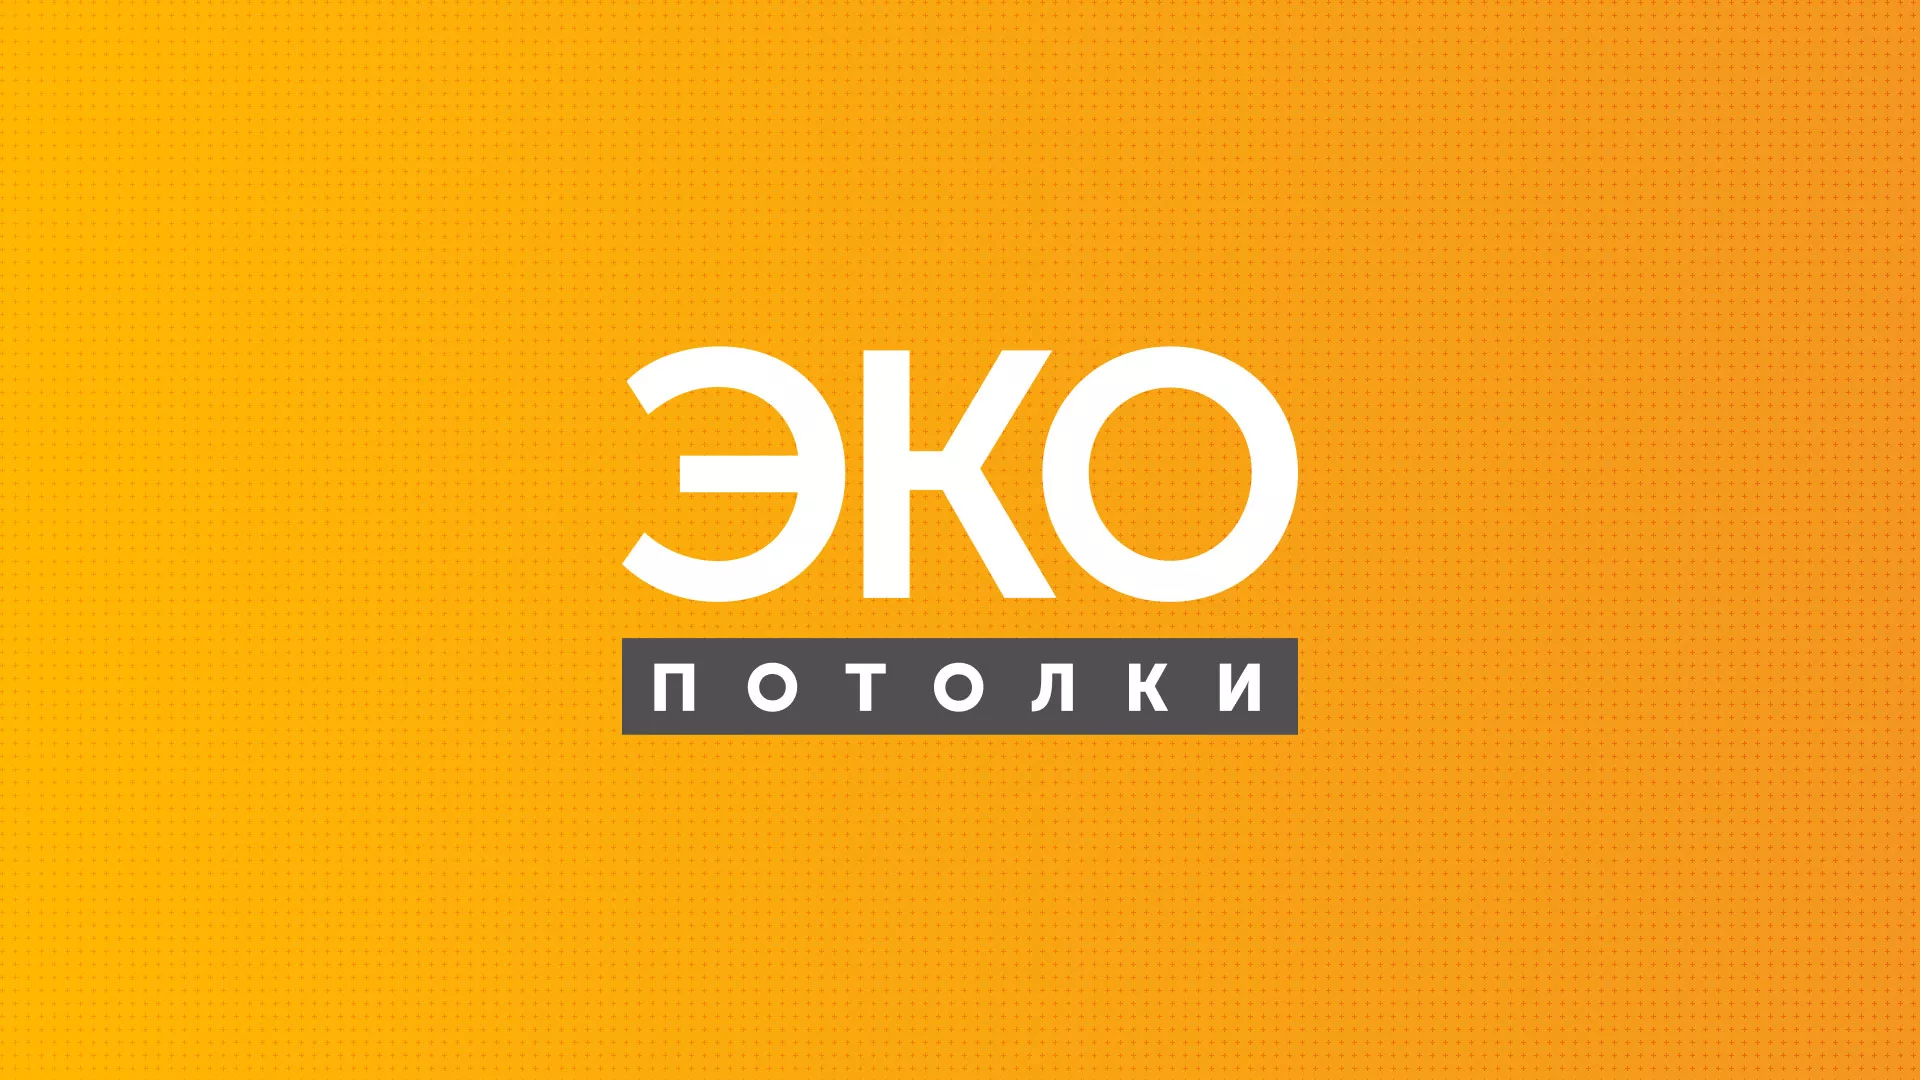 Разработка сайта по натяжным потолкам «Эко Потолки» в Козьмодемьянске